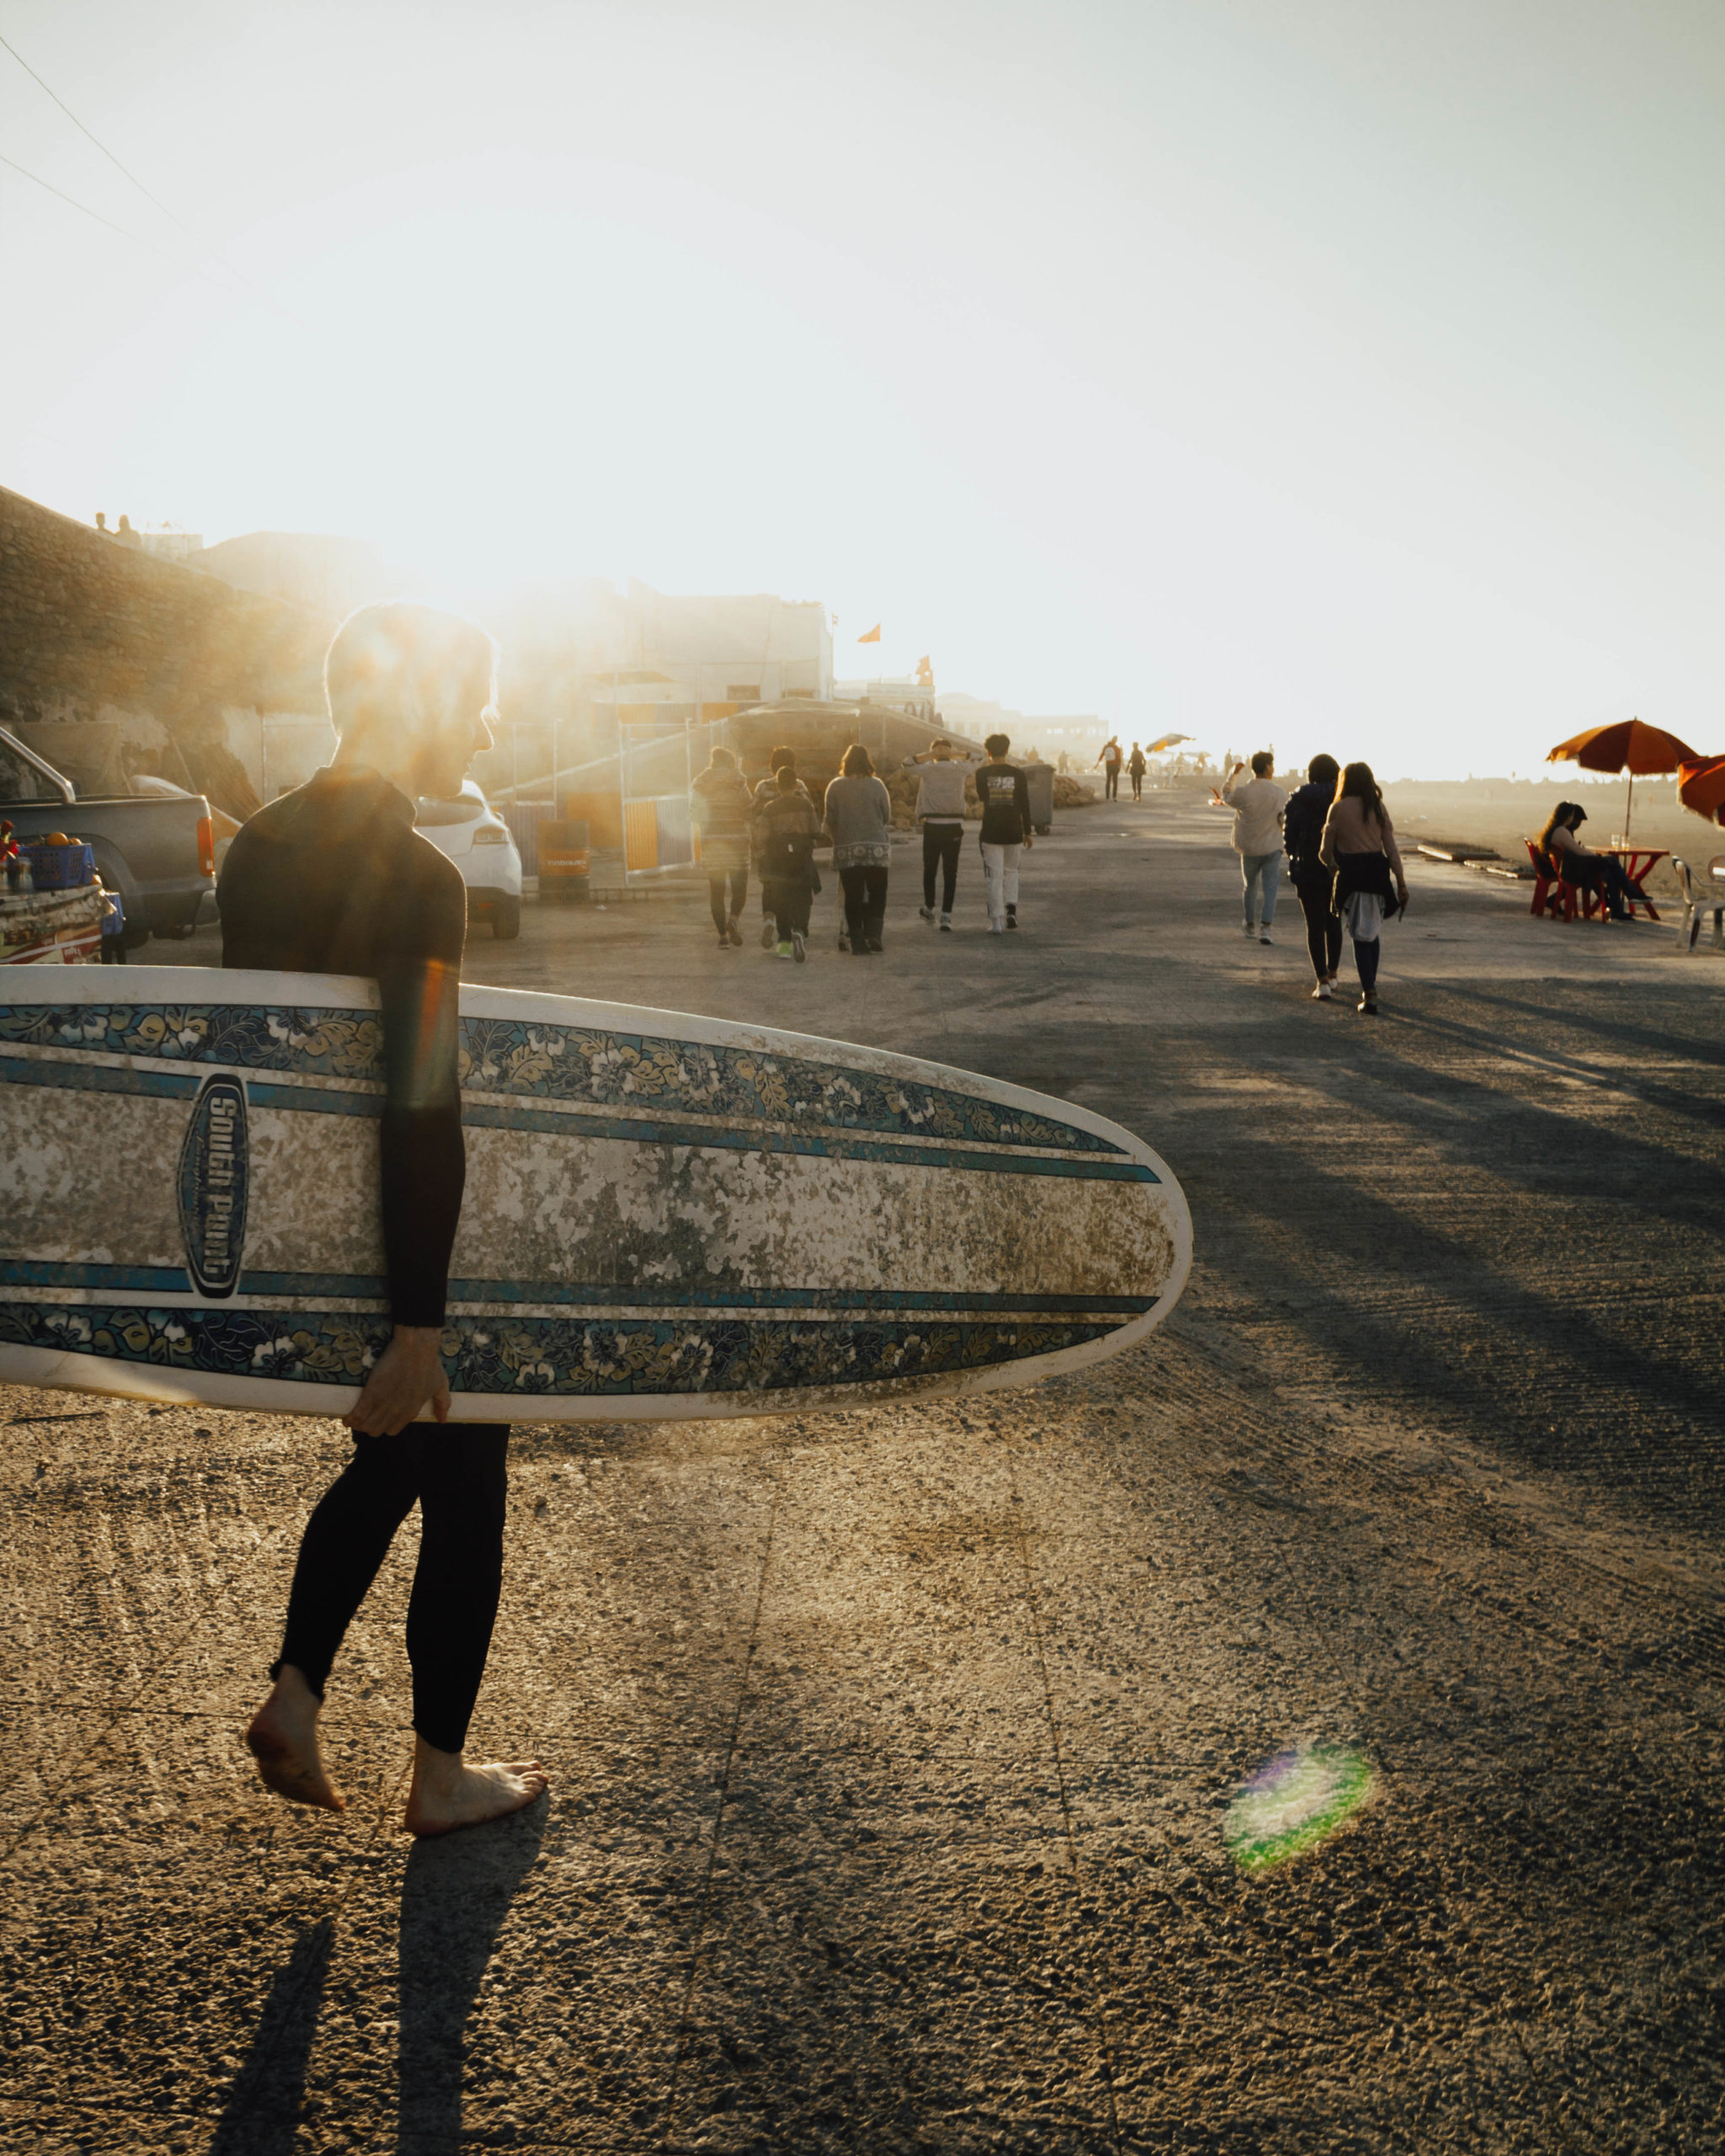 Rabat: de ideale bestemming voor de beginnende surfer.